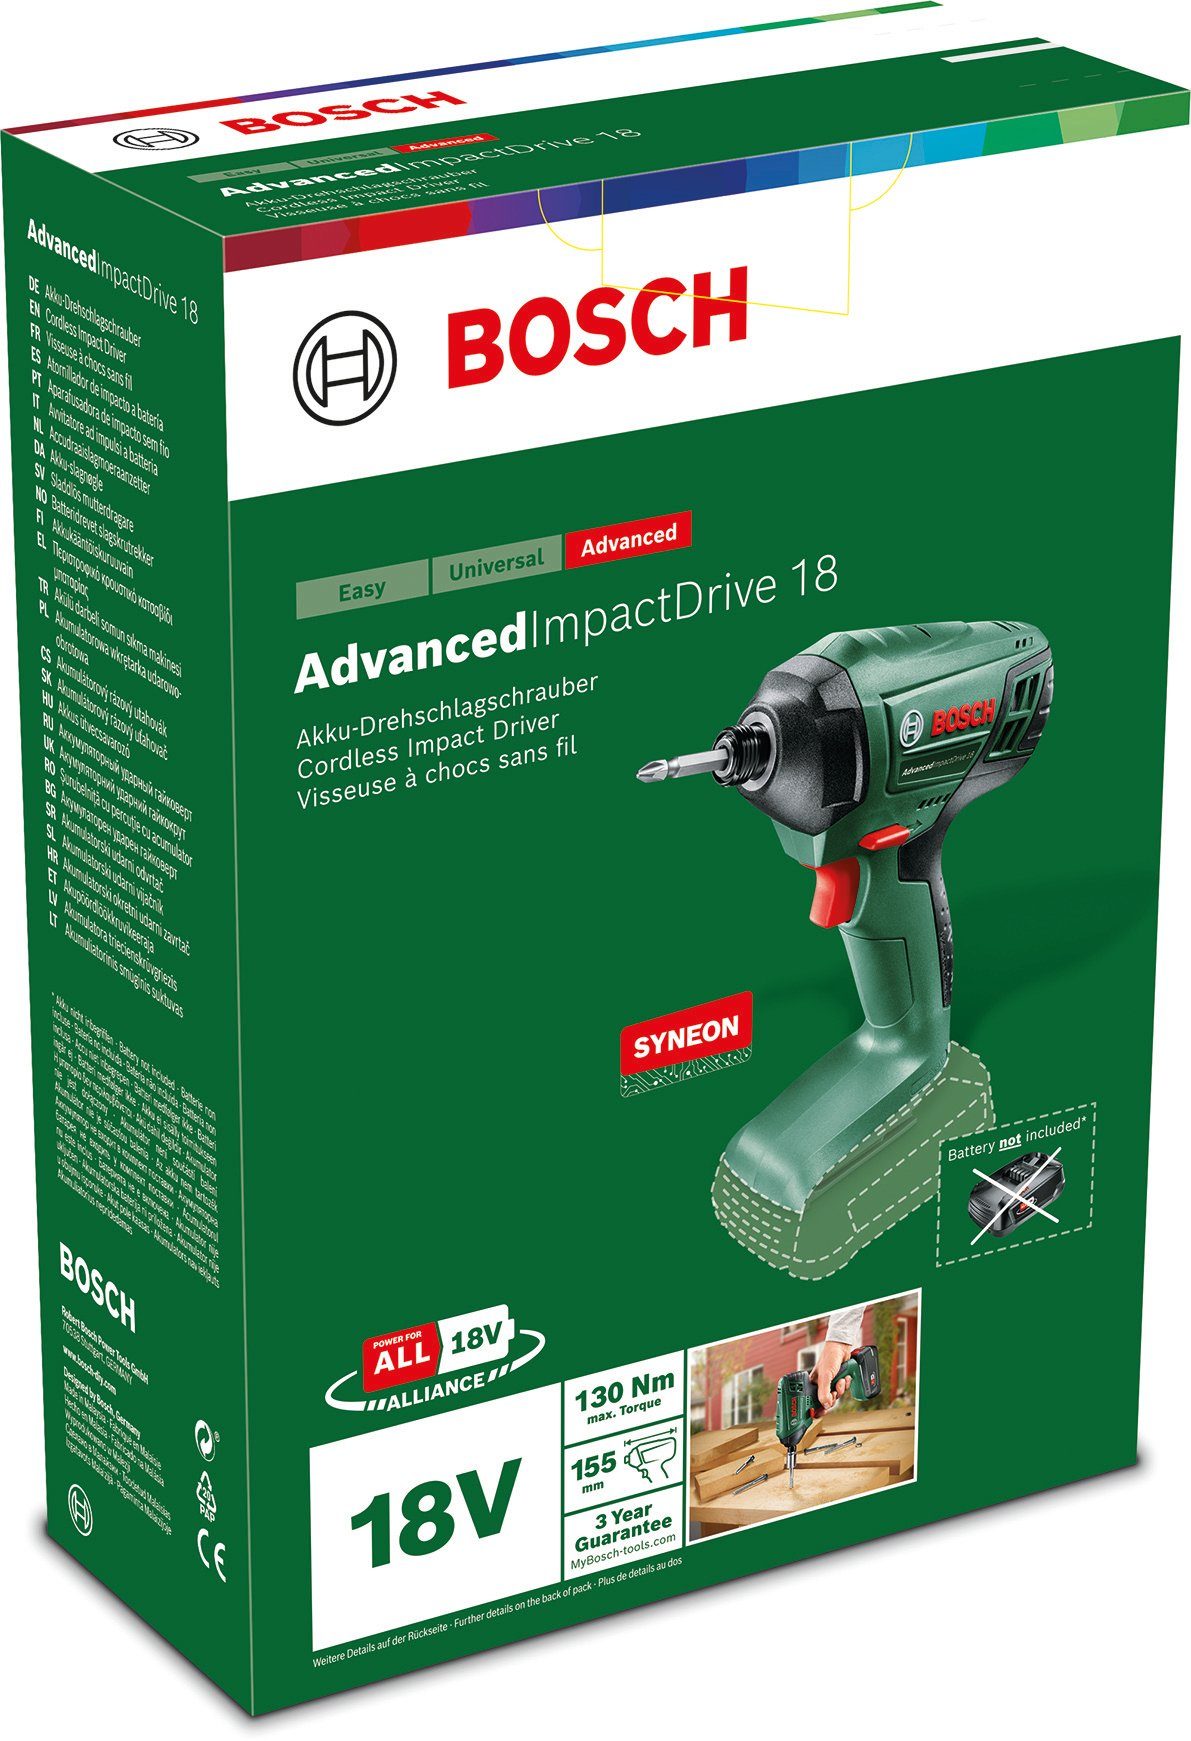 Bosch Home & Garden Akku-Schlagbohrmaschine 18 Akku und AdvancedImpactDrive ohne Ladegerät solo, 